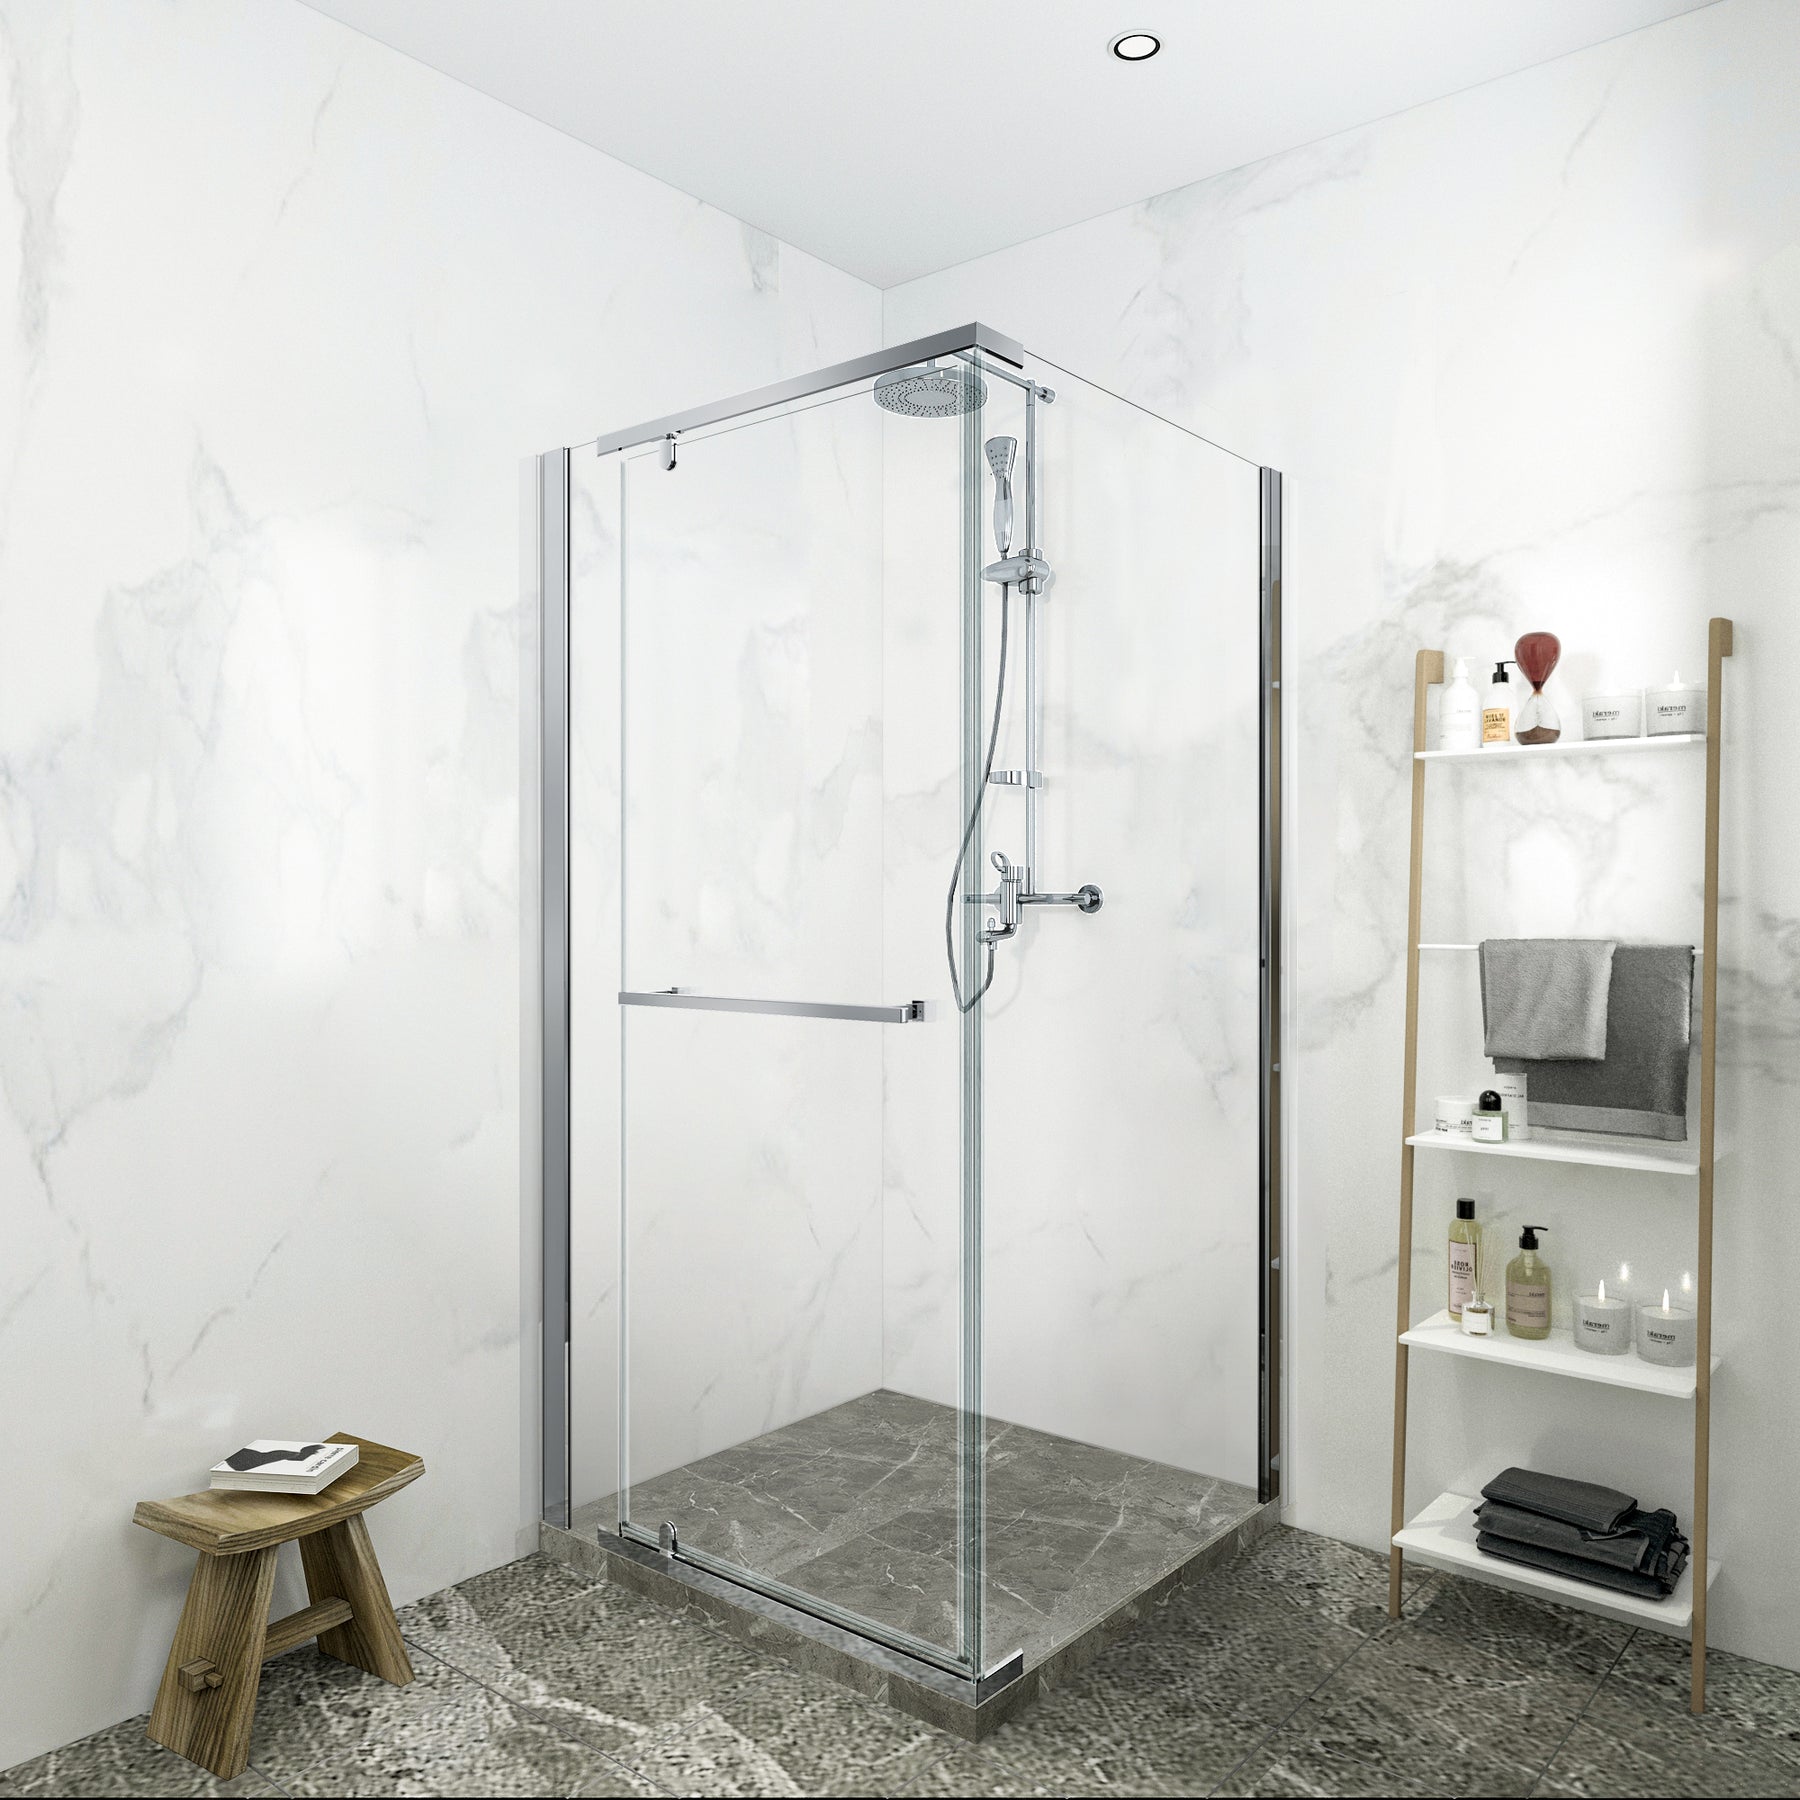 SL4U frameless pivot shower door in chrome